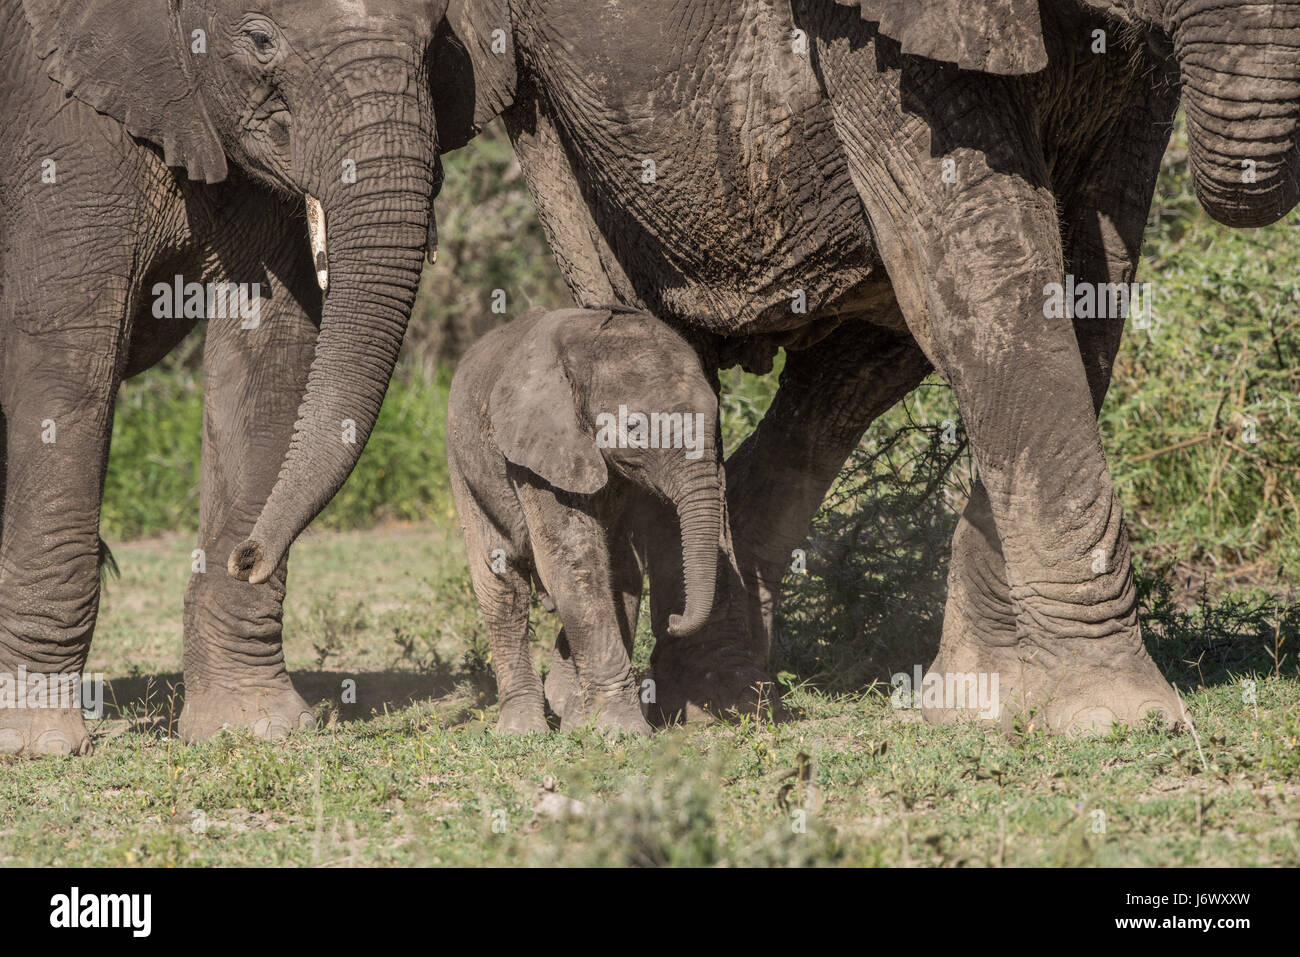 Baby Elephant, Tanzania Stock Photo